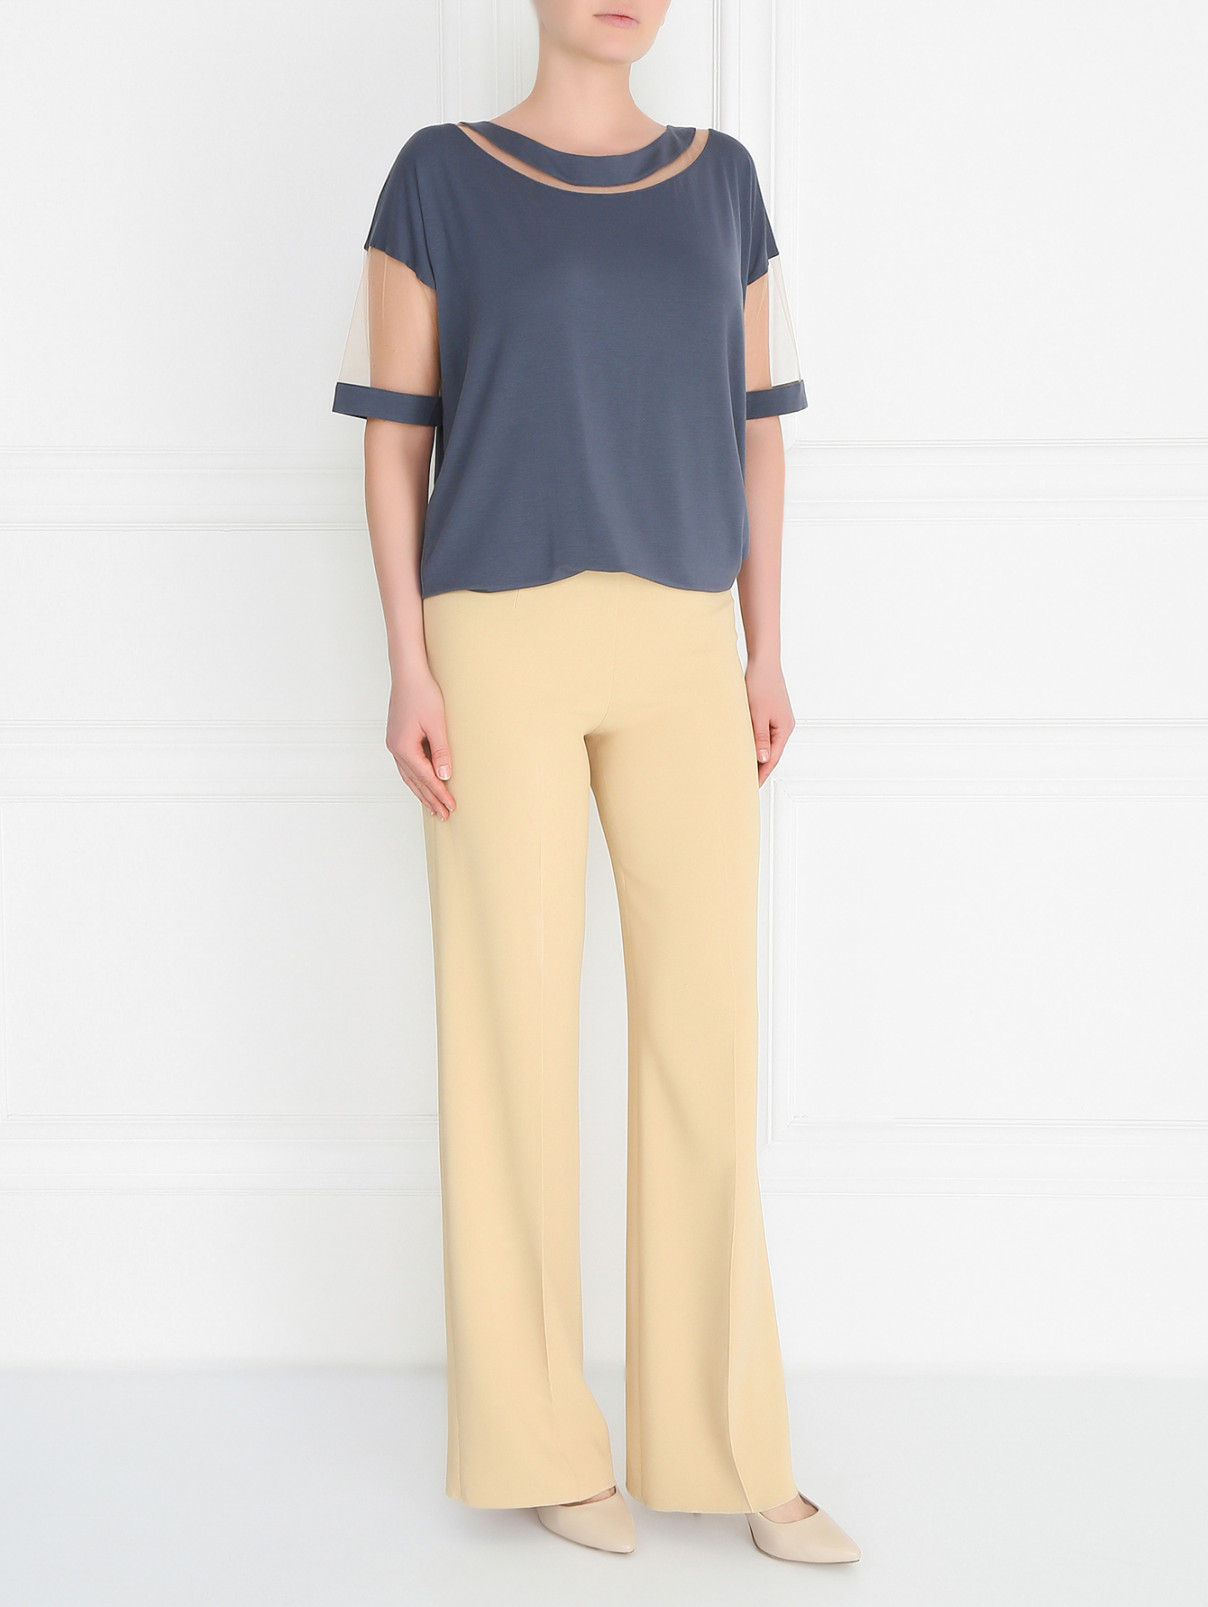 Удлиненная футболка с прозрачными вставками La Perla  –  Модель Общий вид  – Цвет:  Серый